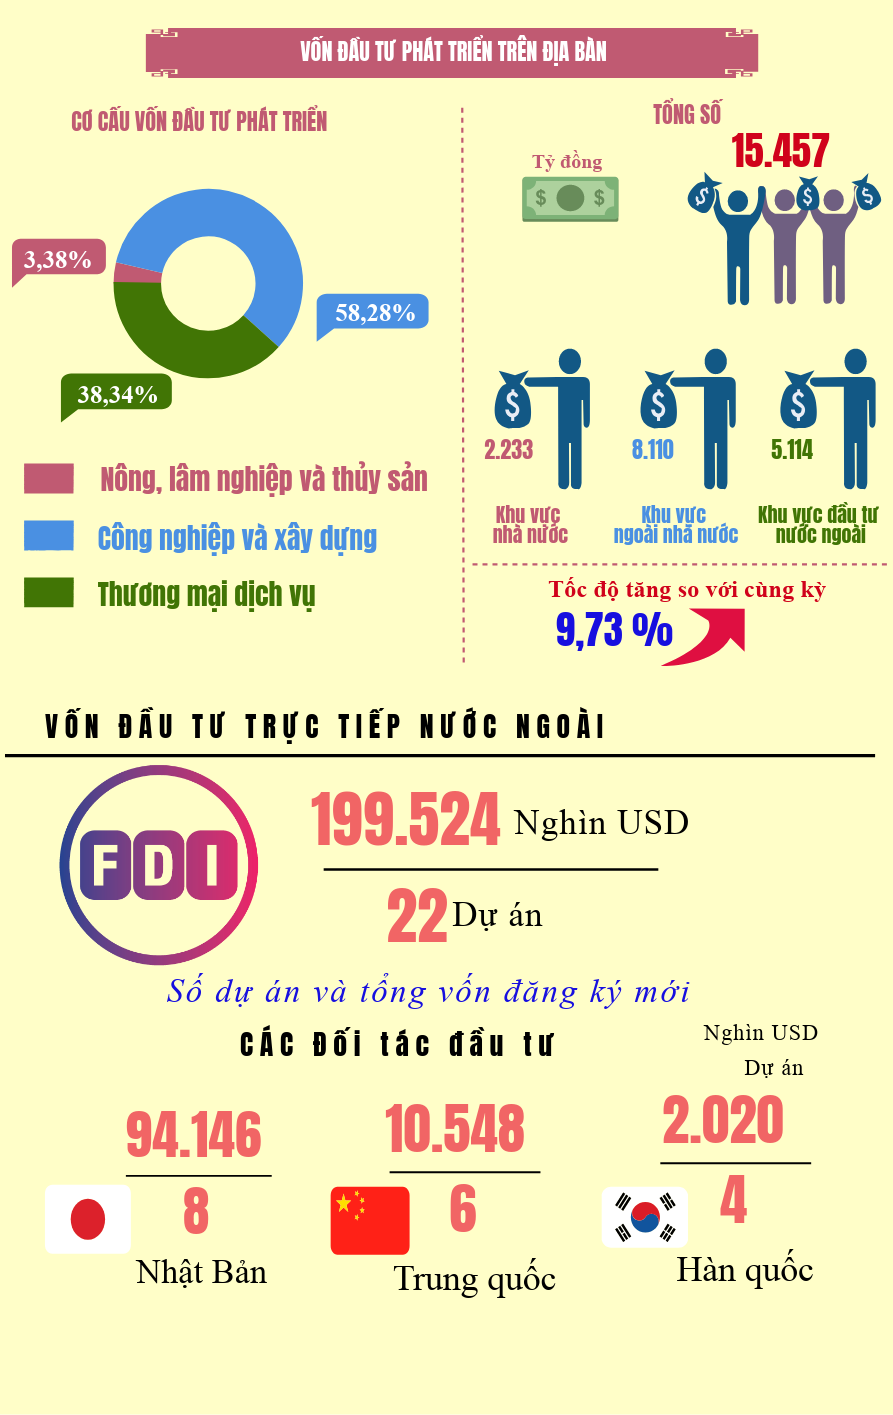 Info tình hình kinh tế - xã hội tỉnh Hưng Yên 6 tháng năm 2019